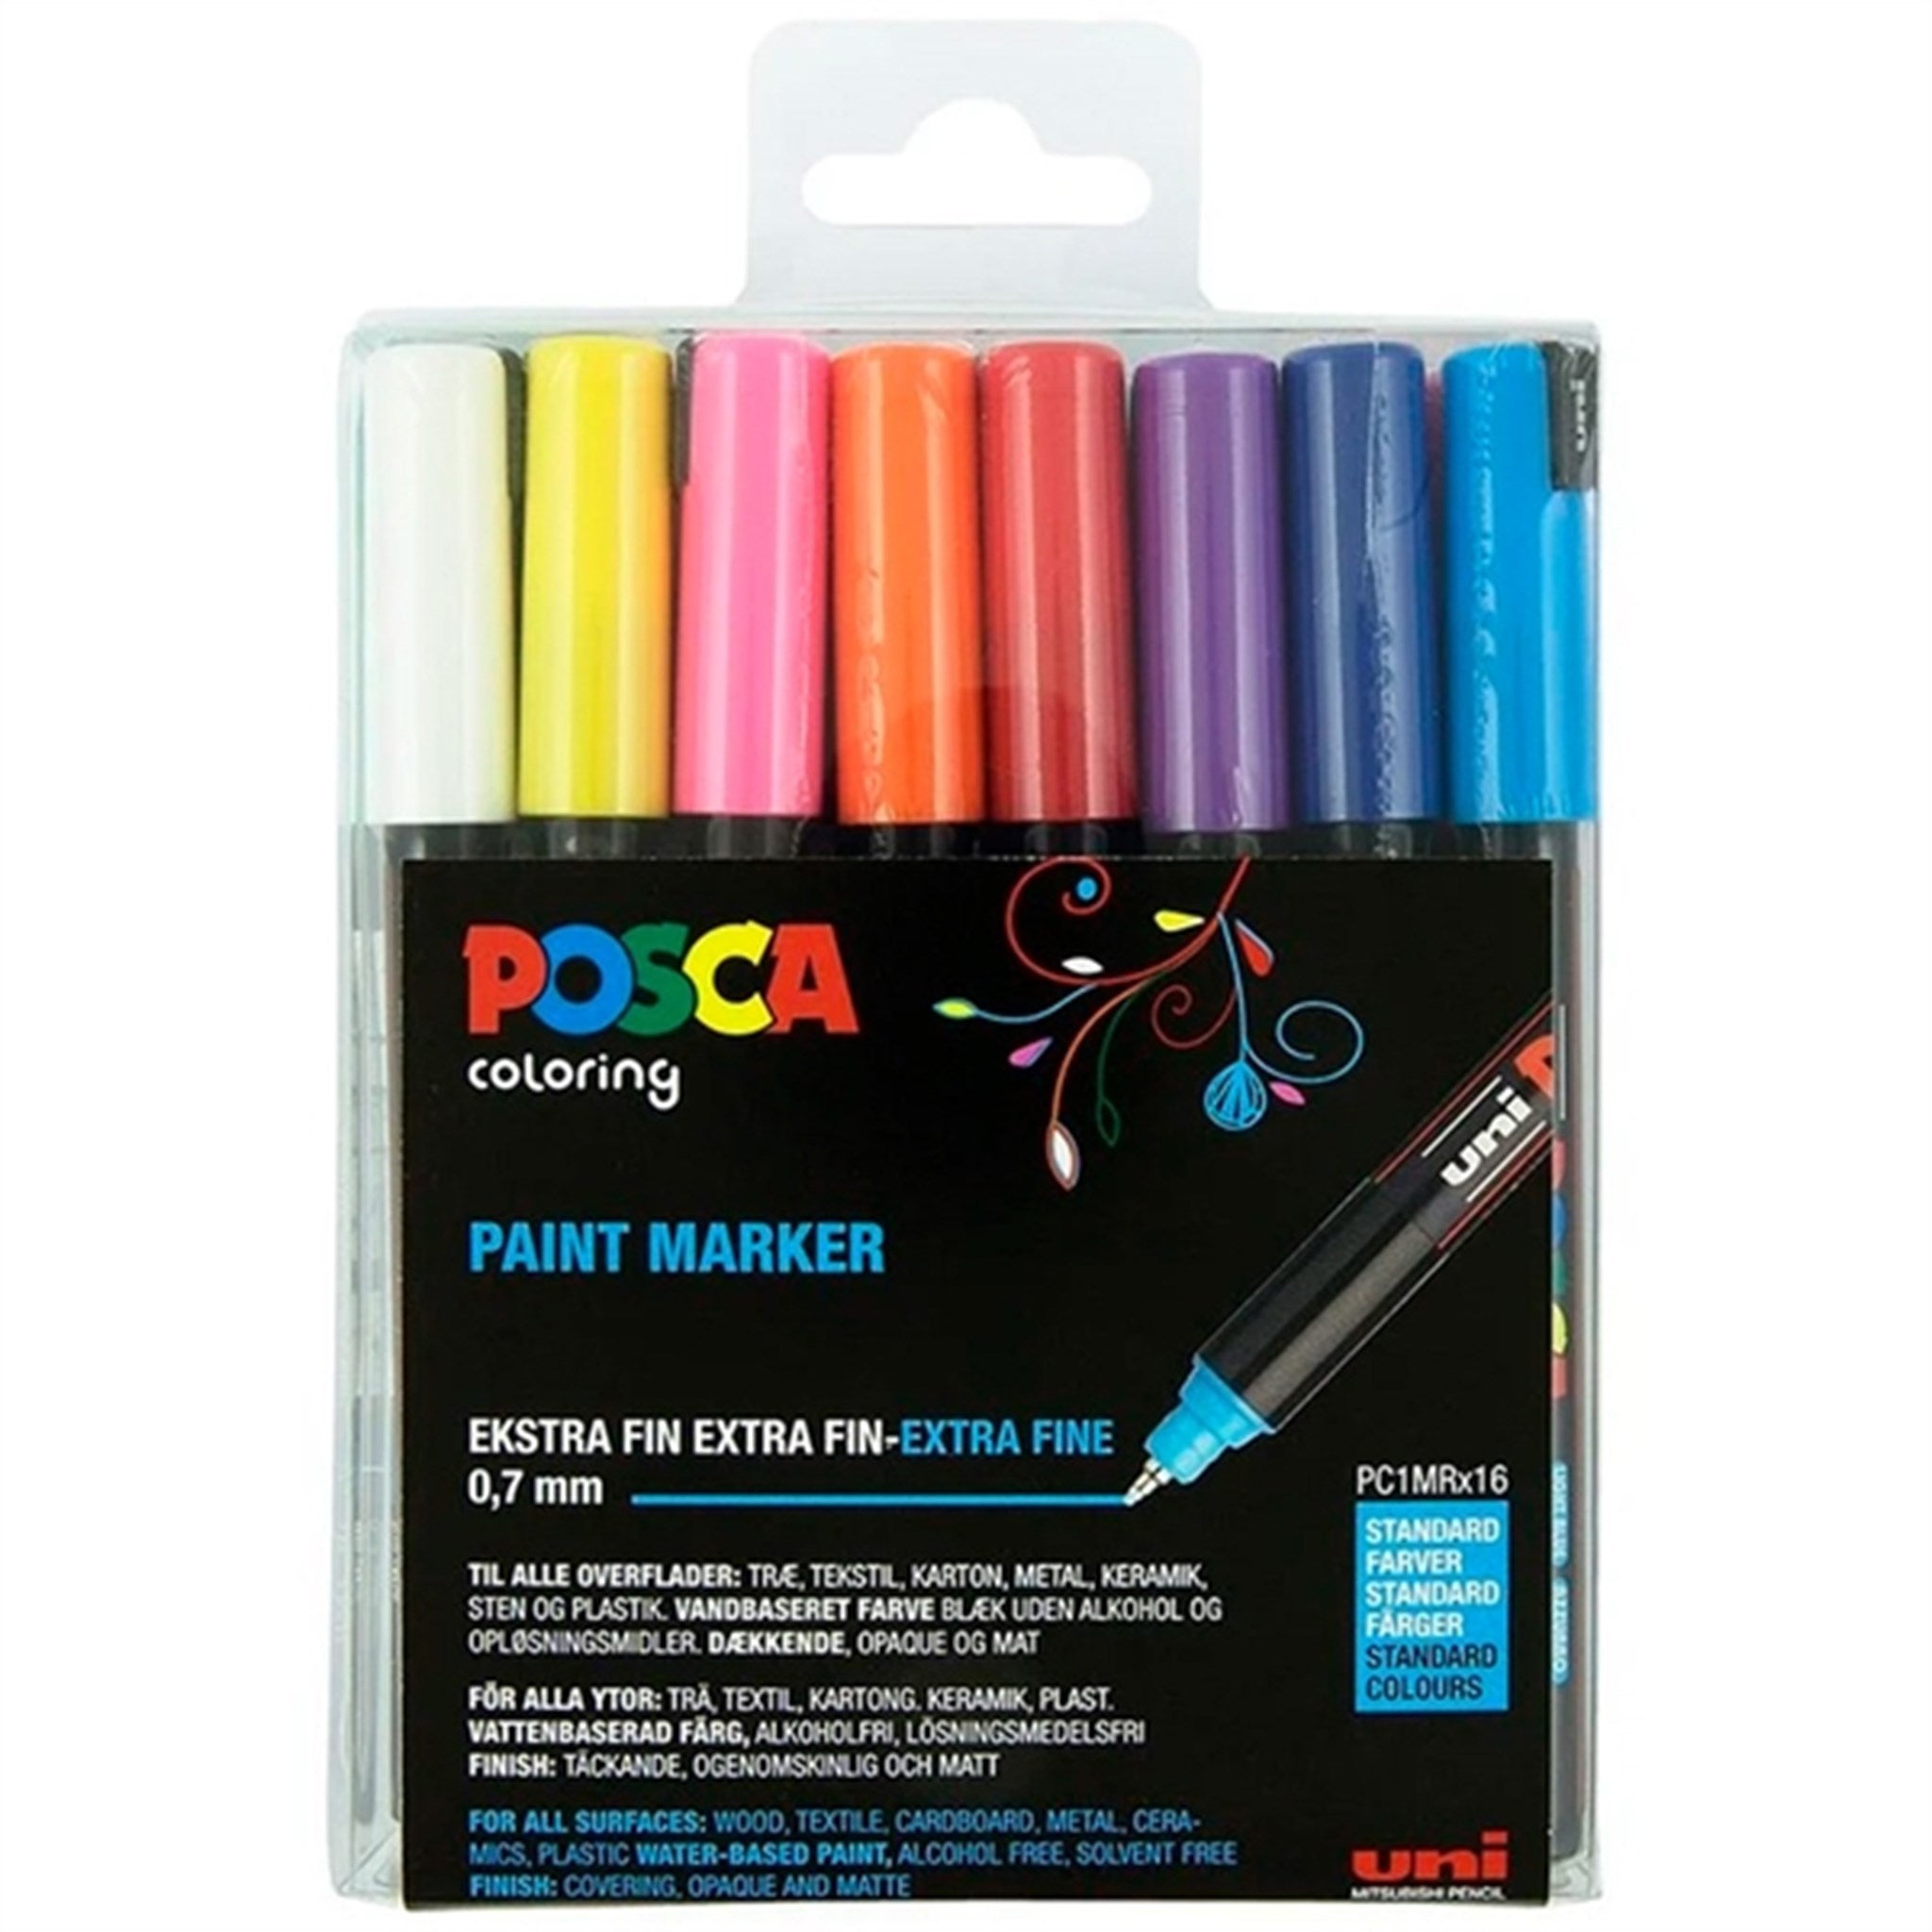 Posca Uni Marker PC-1MR 16 Colors